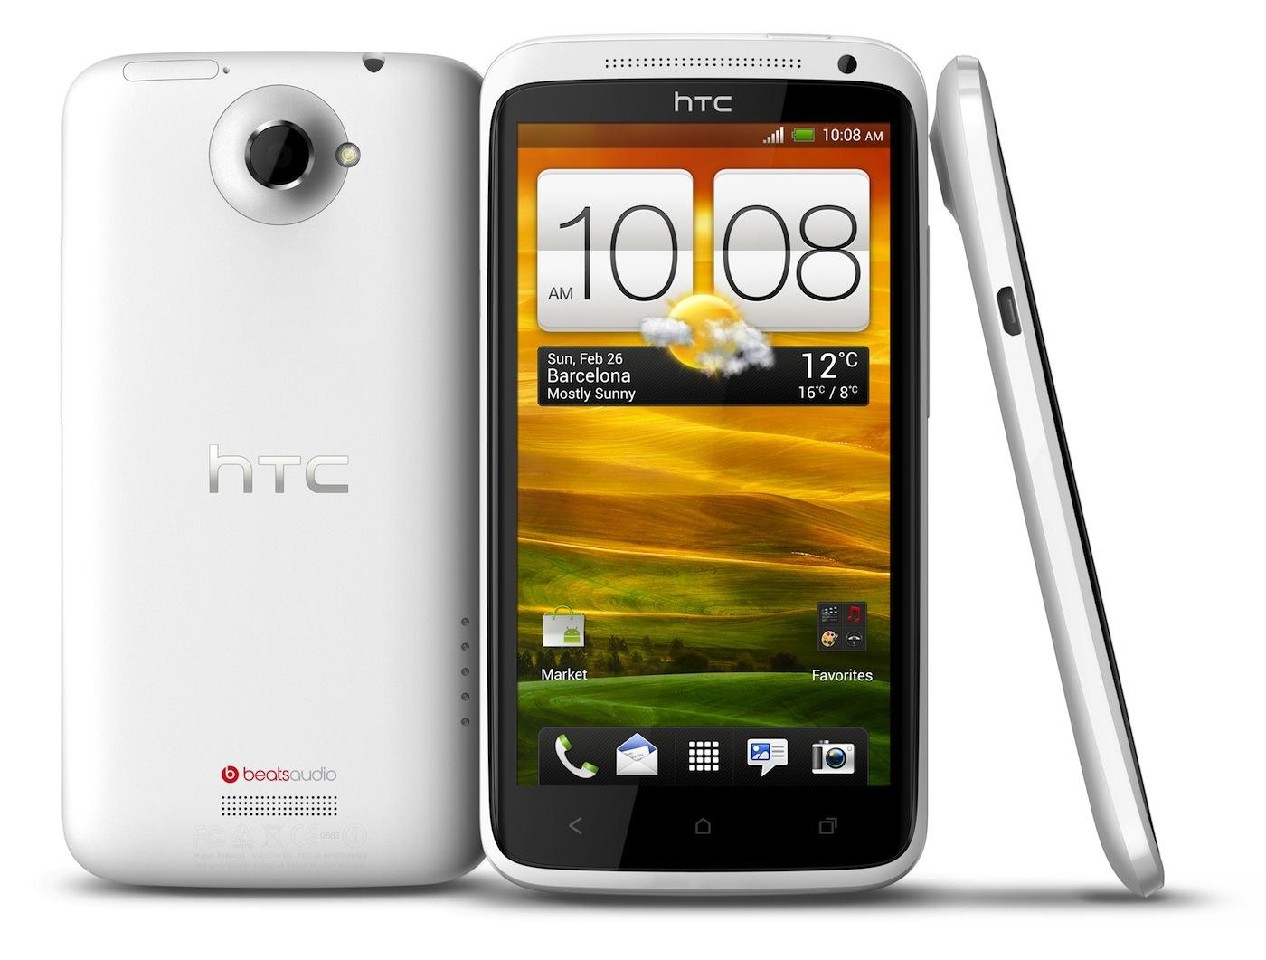 Testy baterii HTC One X w wersji normalnej i AT&T na tle innych smartfonów